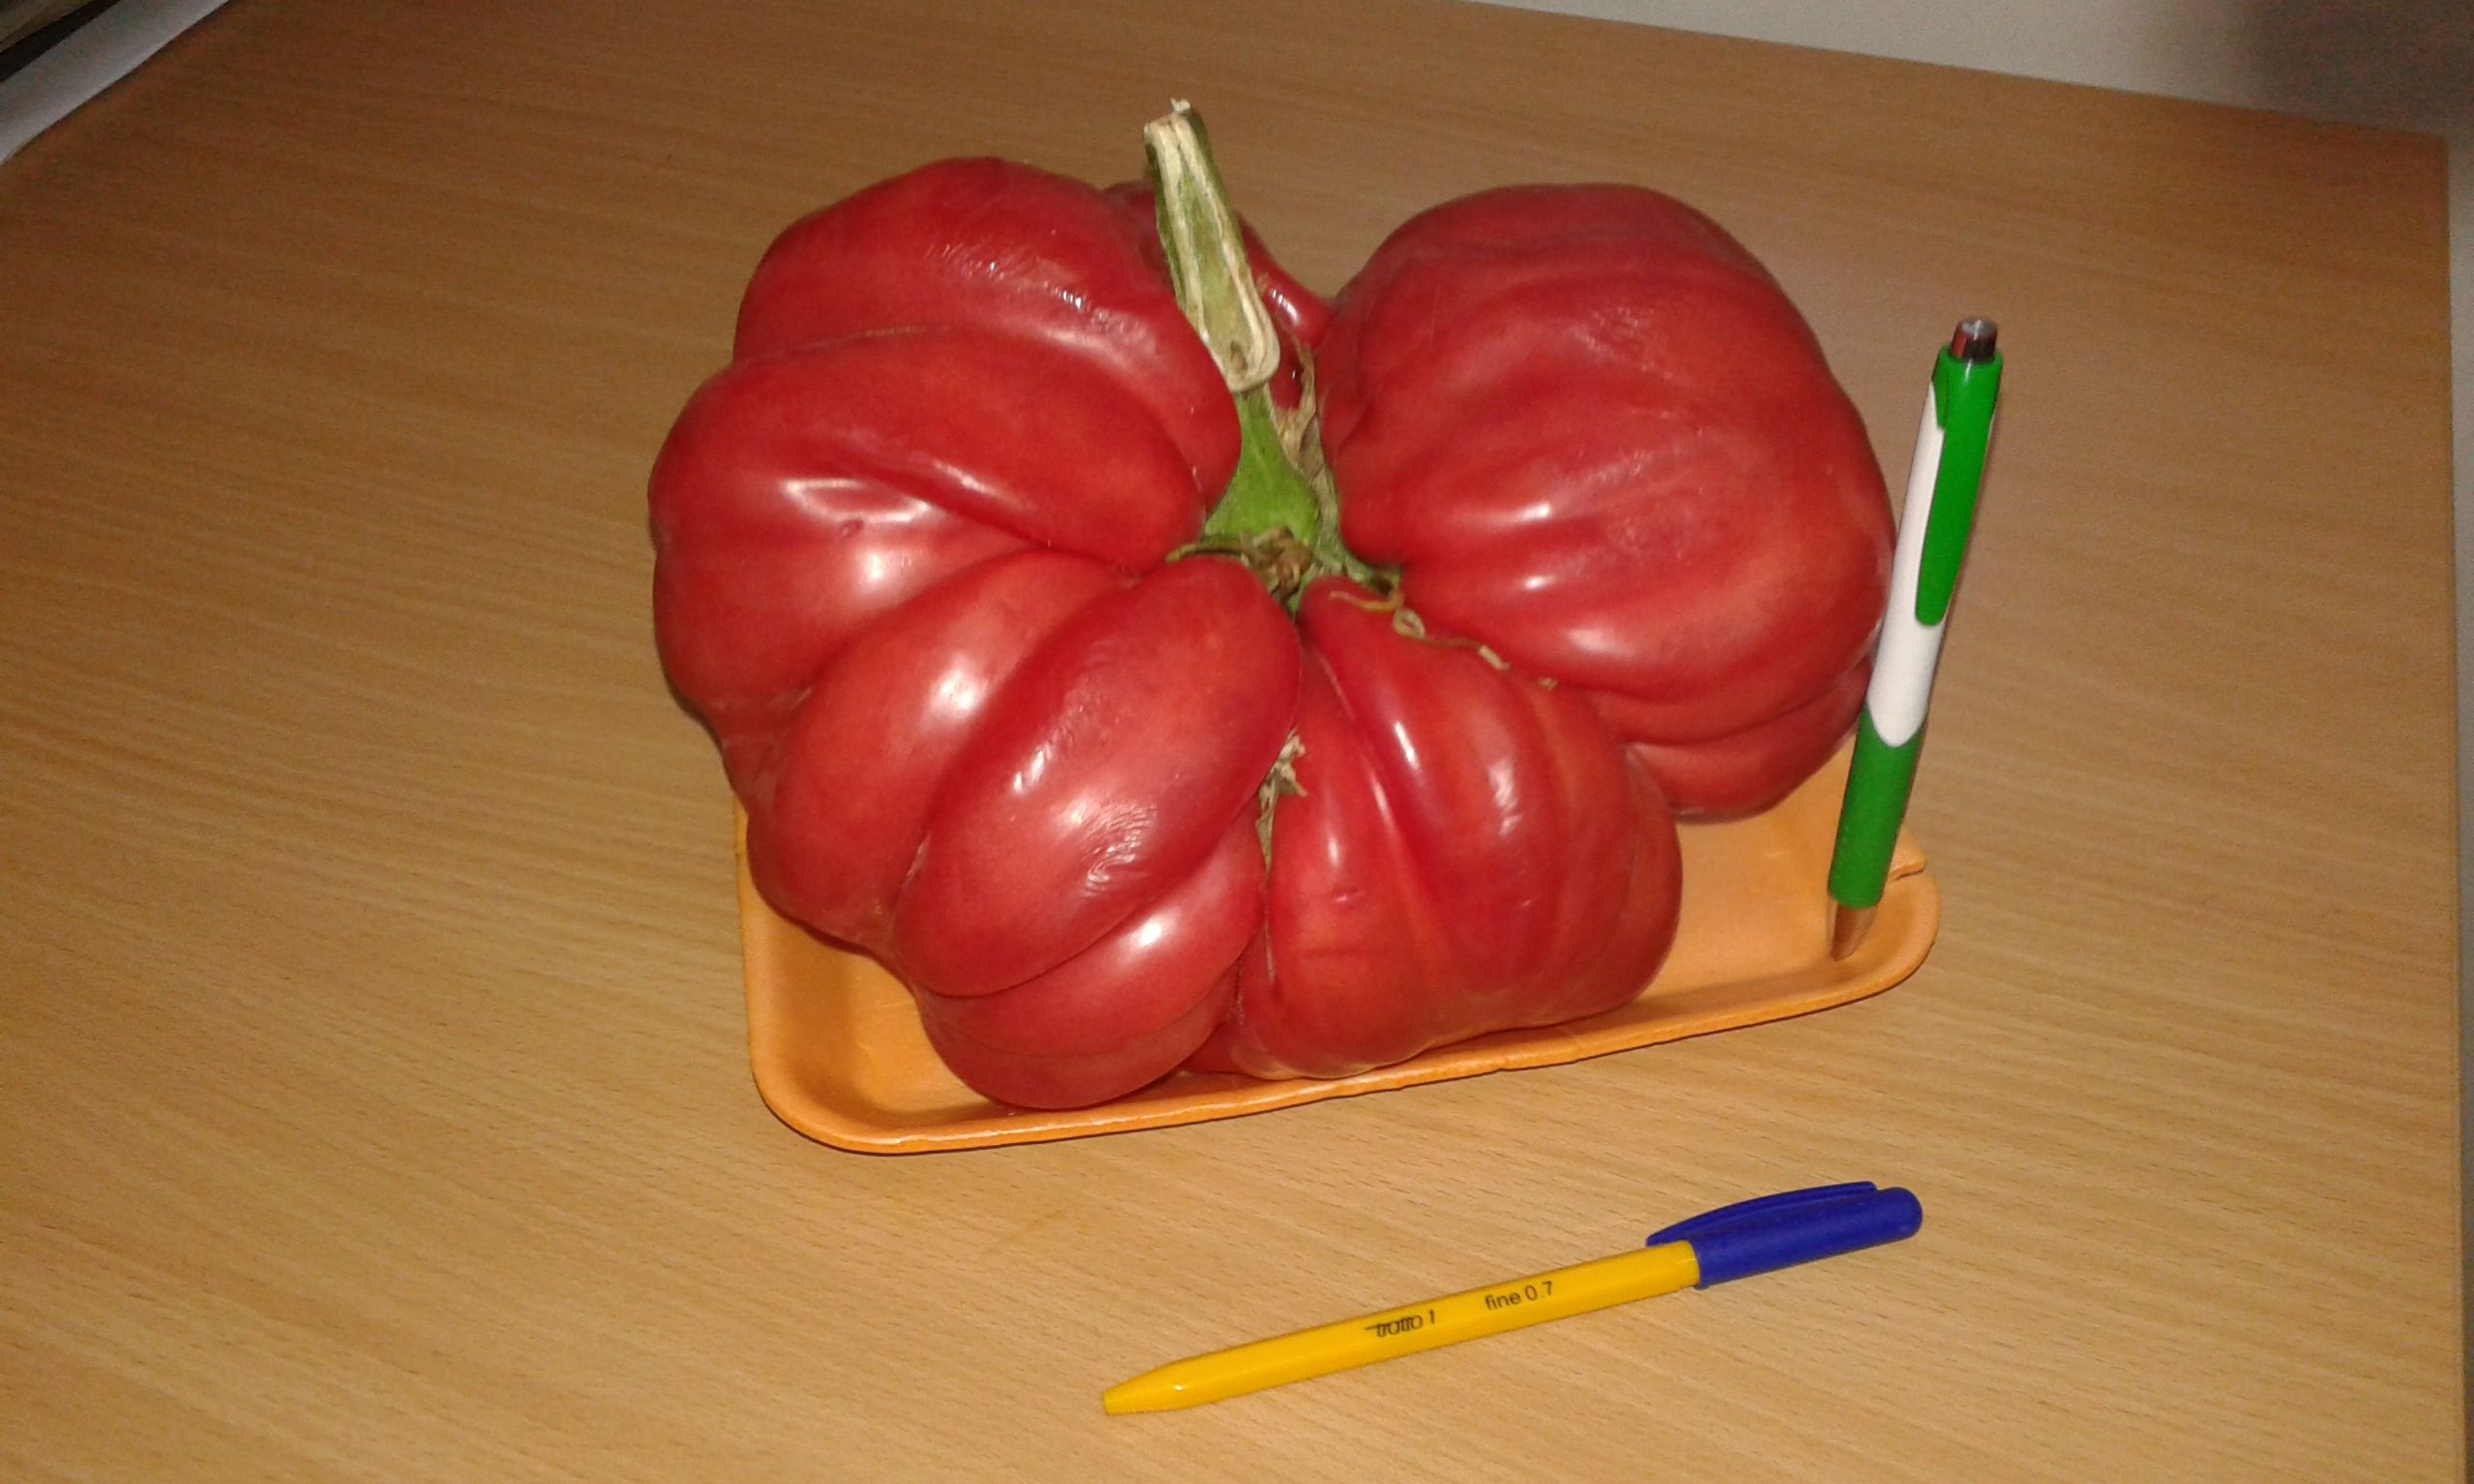 Семейство отгледа 2.3-килограмов домат